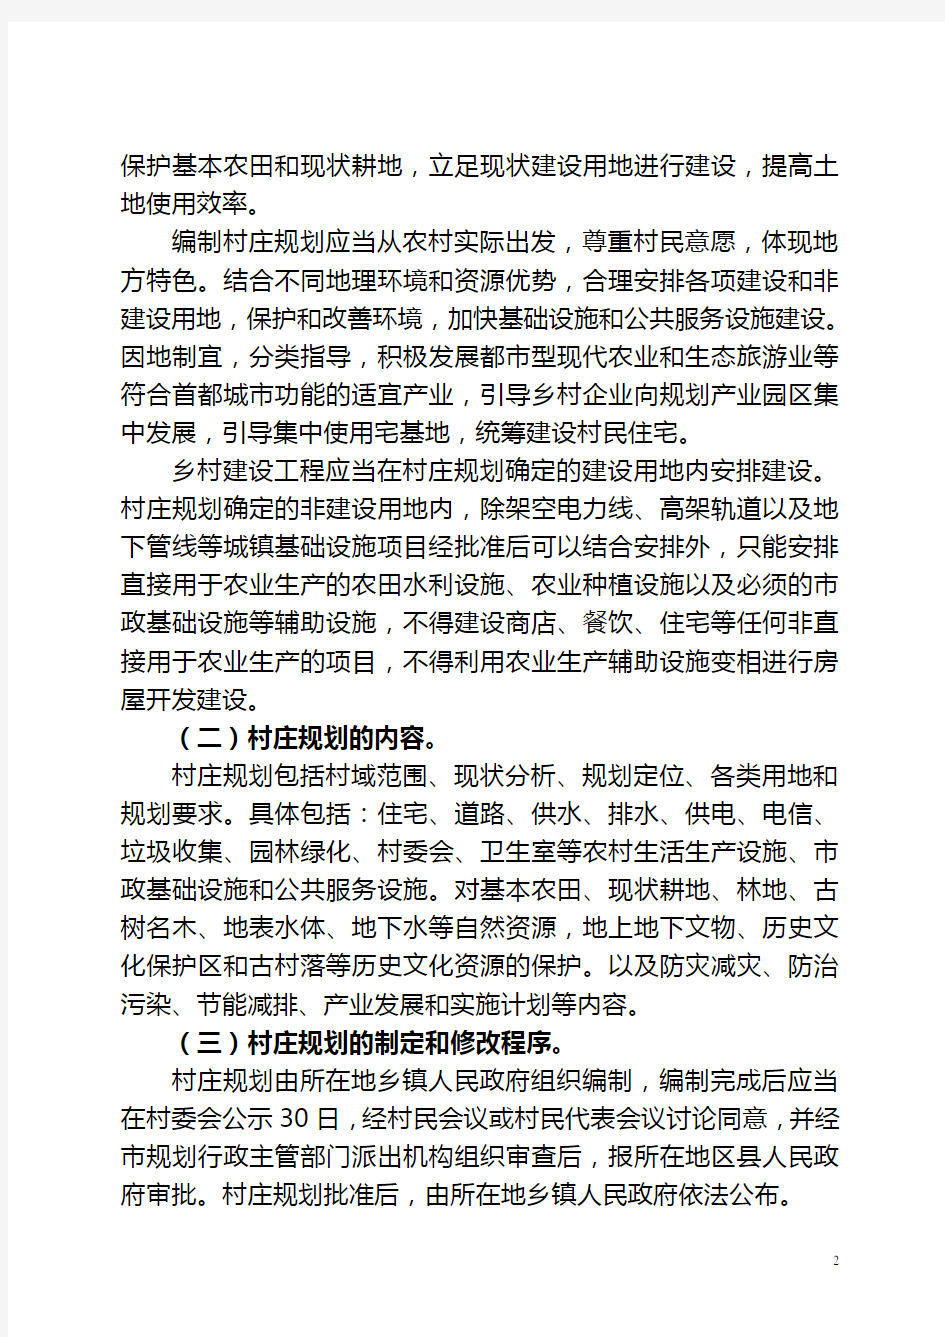 北京村庄建设规划管理指导意见-北京国土资源局